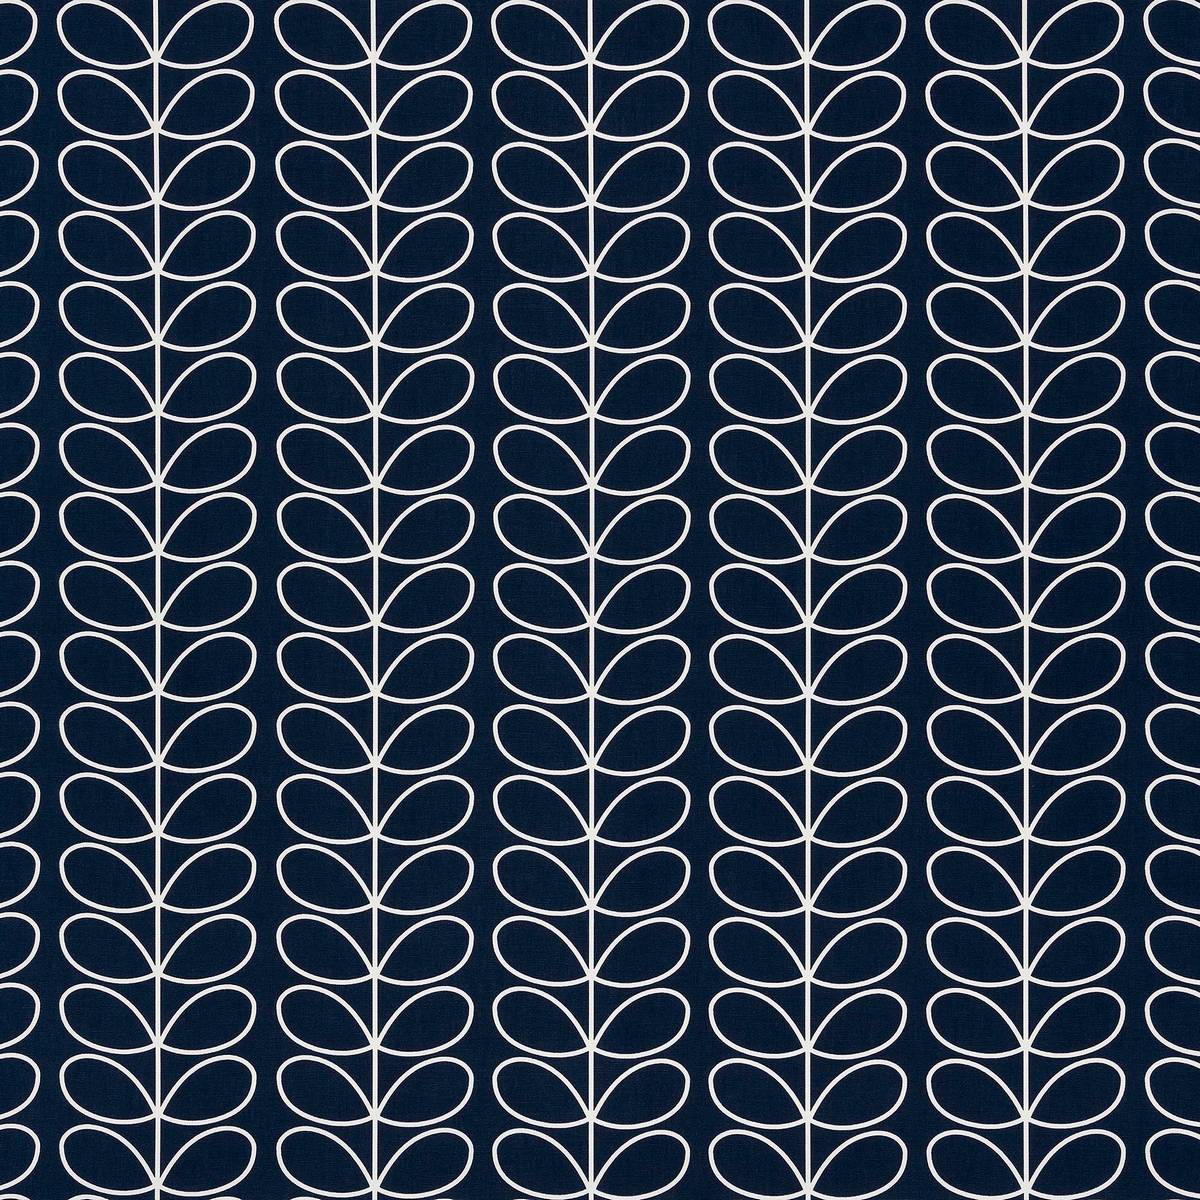 Linear Stem Whale Fabric by Orla Kiely